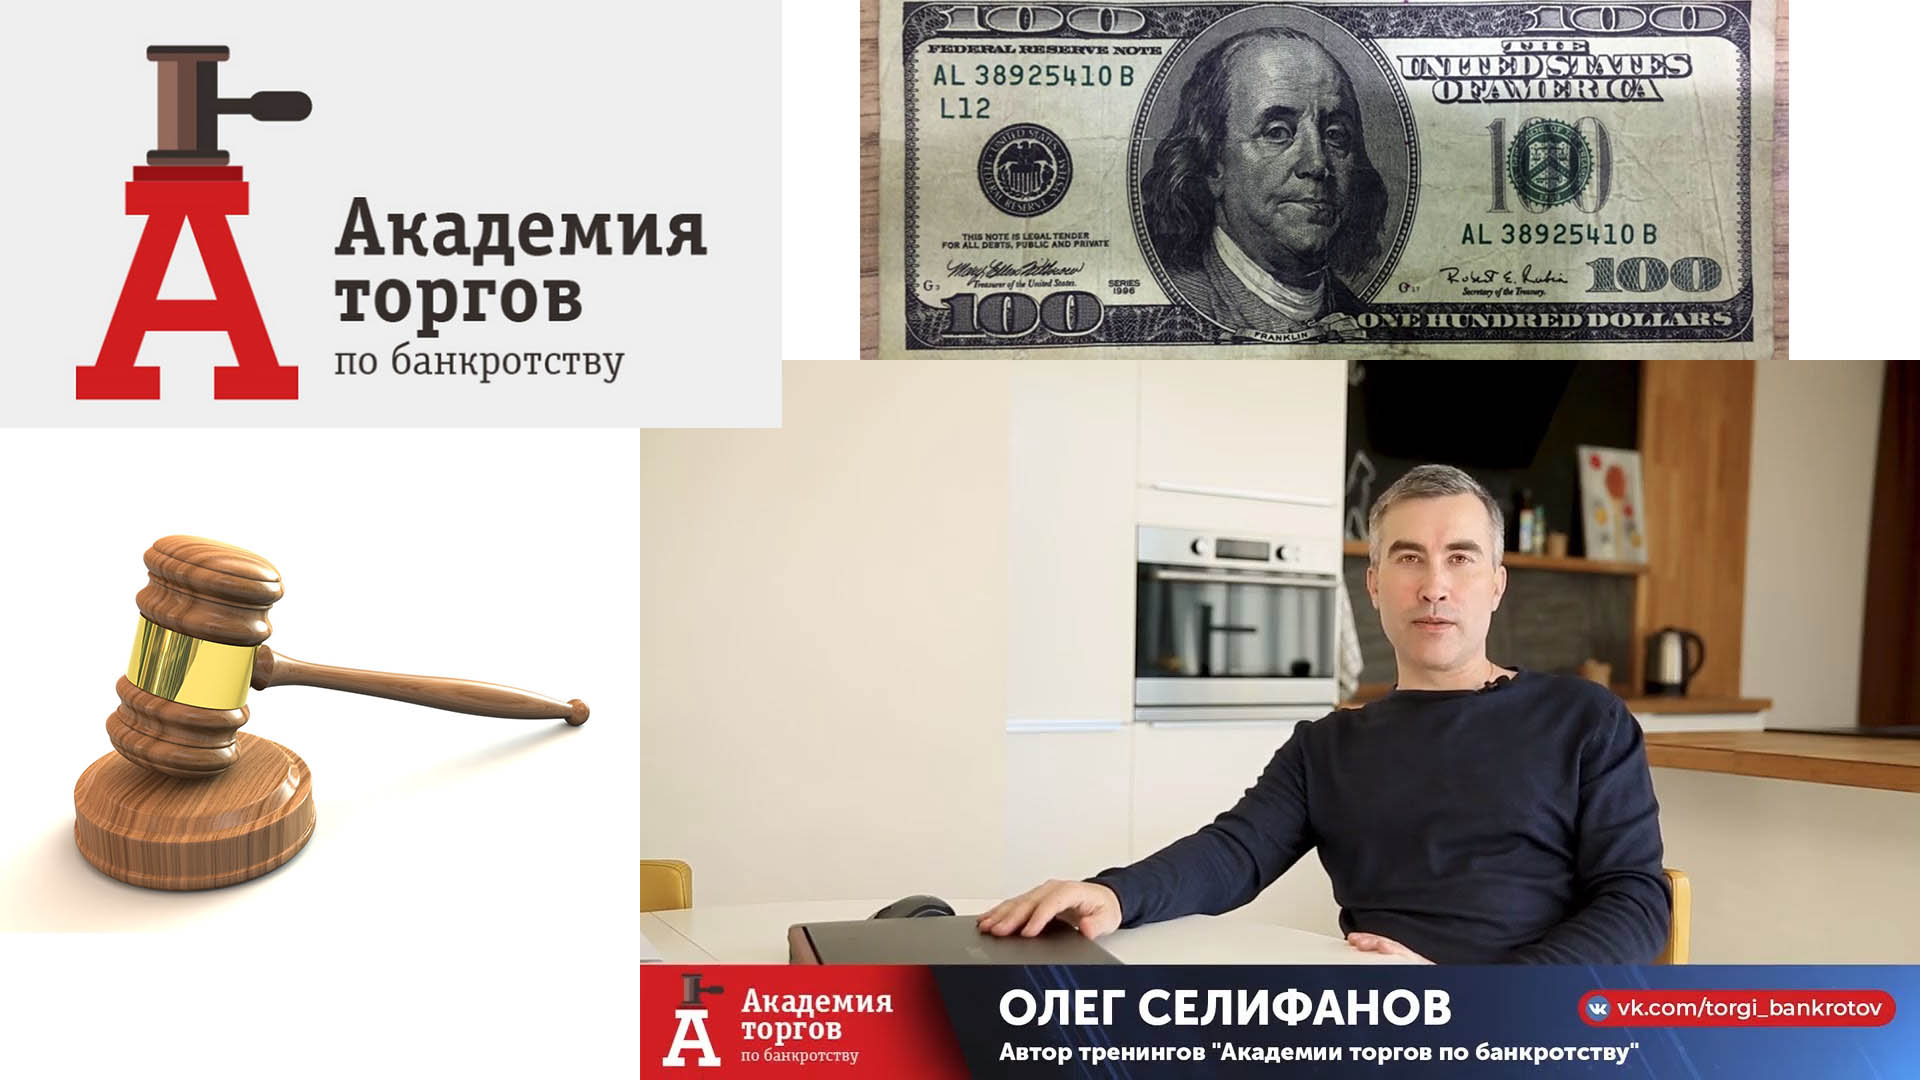 Академия торгов по банкротству  Олега Селифанова отзыв